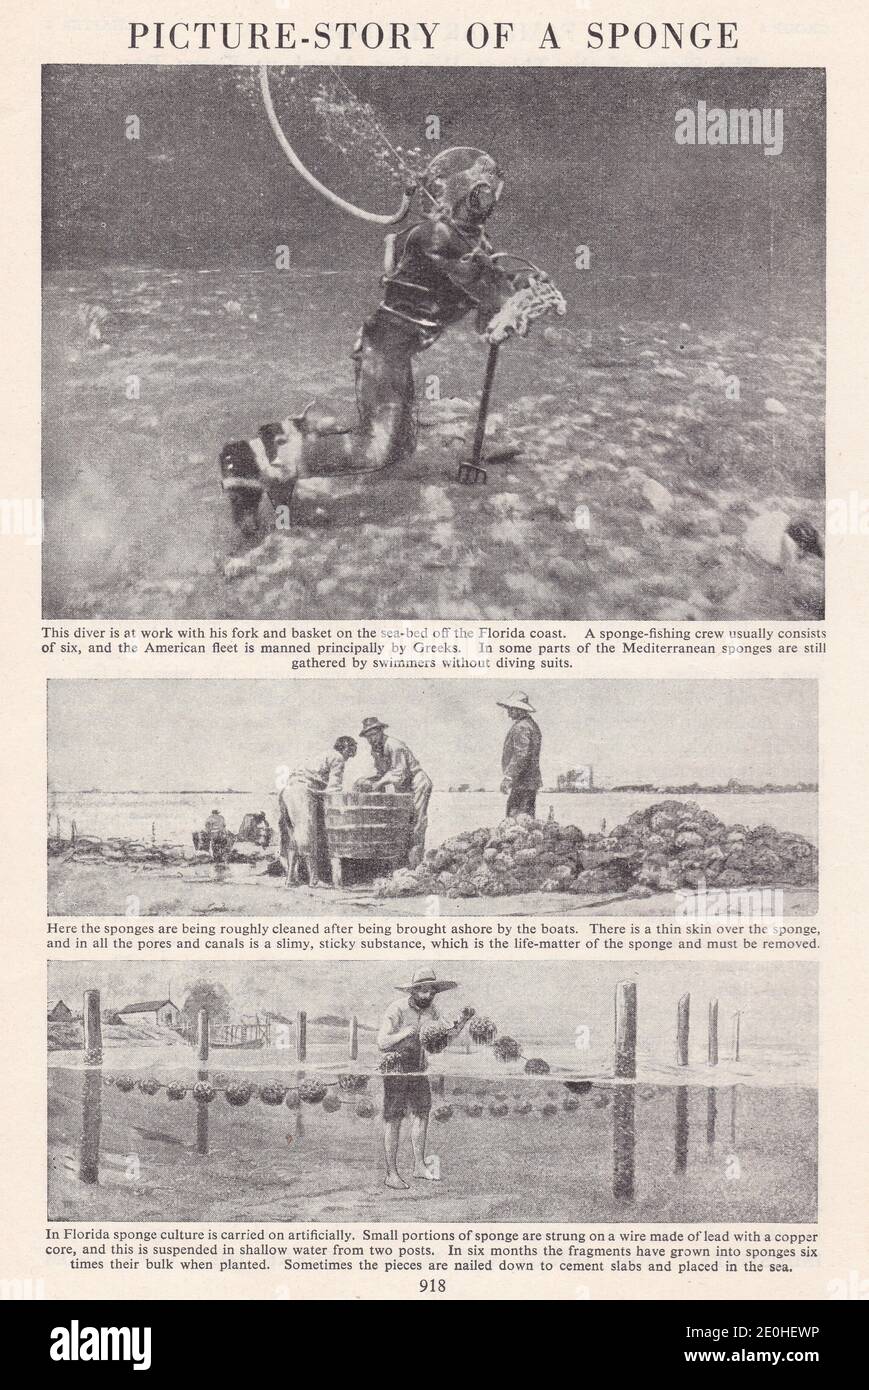 Bildergeschichte von einem Schwamm - Tauchen nach Schwämmen vor der Florida Küste, Reinigung der Schwämme und künstlich wachsenden Schwämme. Stockfoto